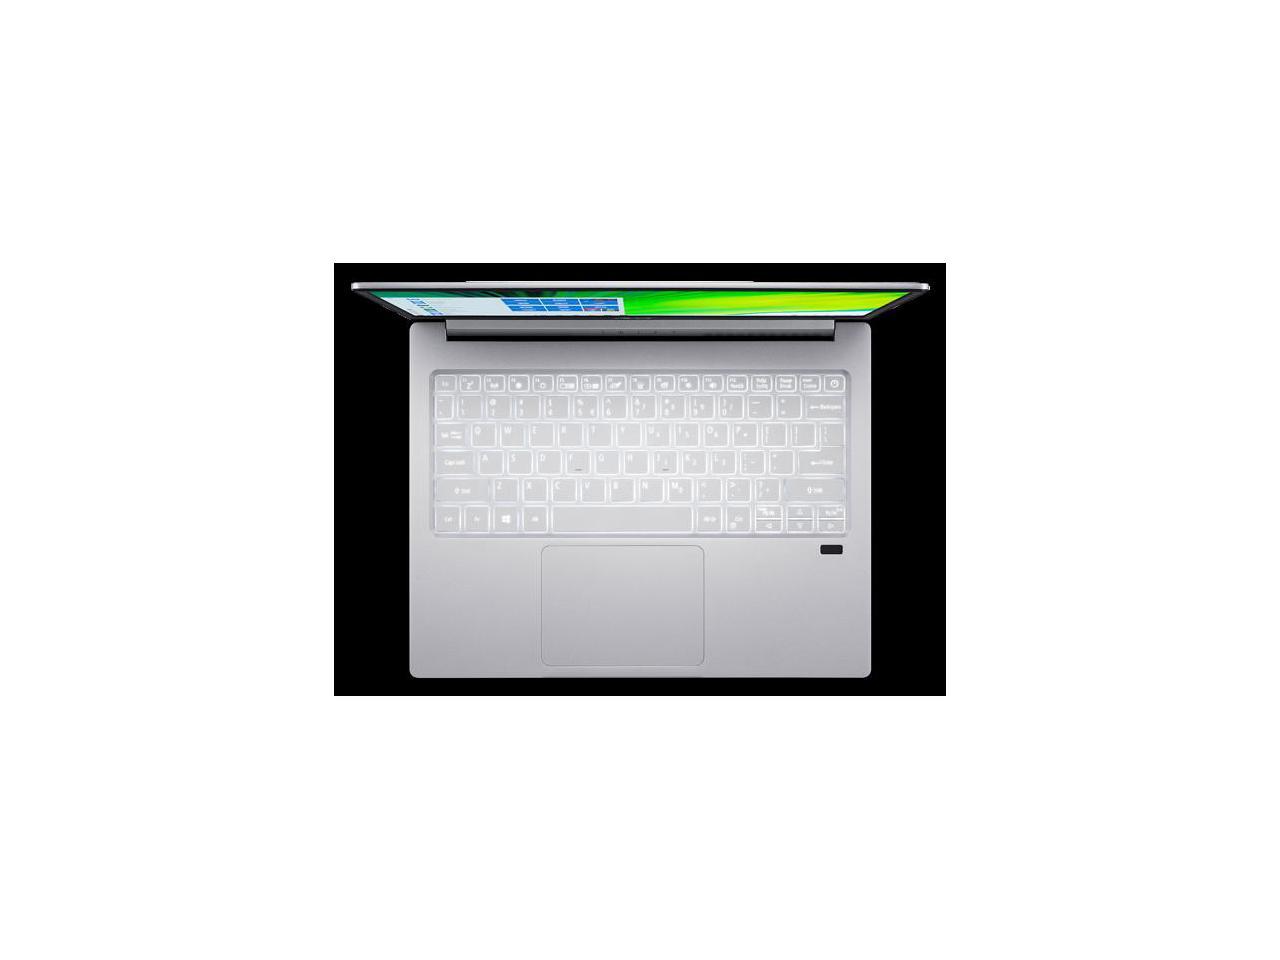 Acer Swift 3 Intel Evo Thin & Light Laptop, 13.5" 2256 x 1504 IPS, Intel Core i5-1135G7, Intel Iris Xe Graphics, 8GB LPDDR4X, 512GB NVMe SSD, Wi-Fi 6, Fingerprint Reader, Back-lit KB, SF313-53-56UU